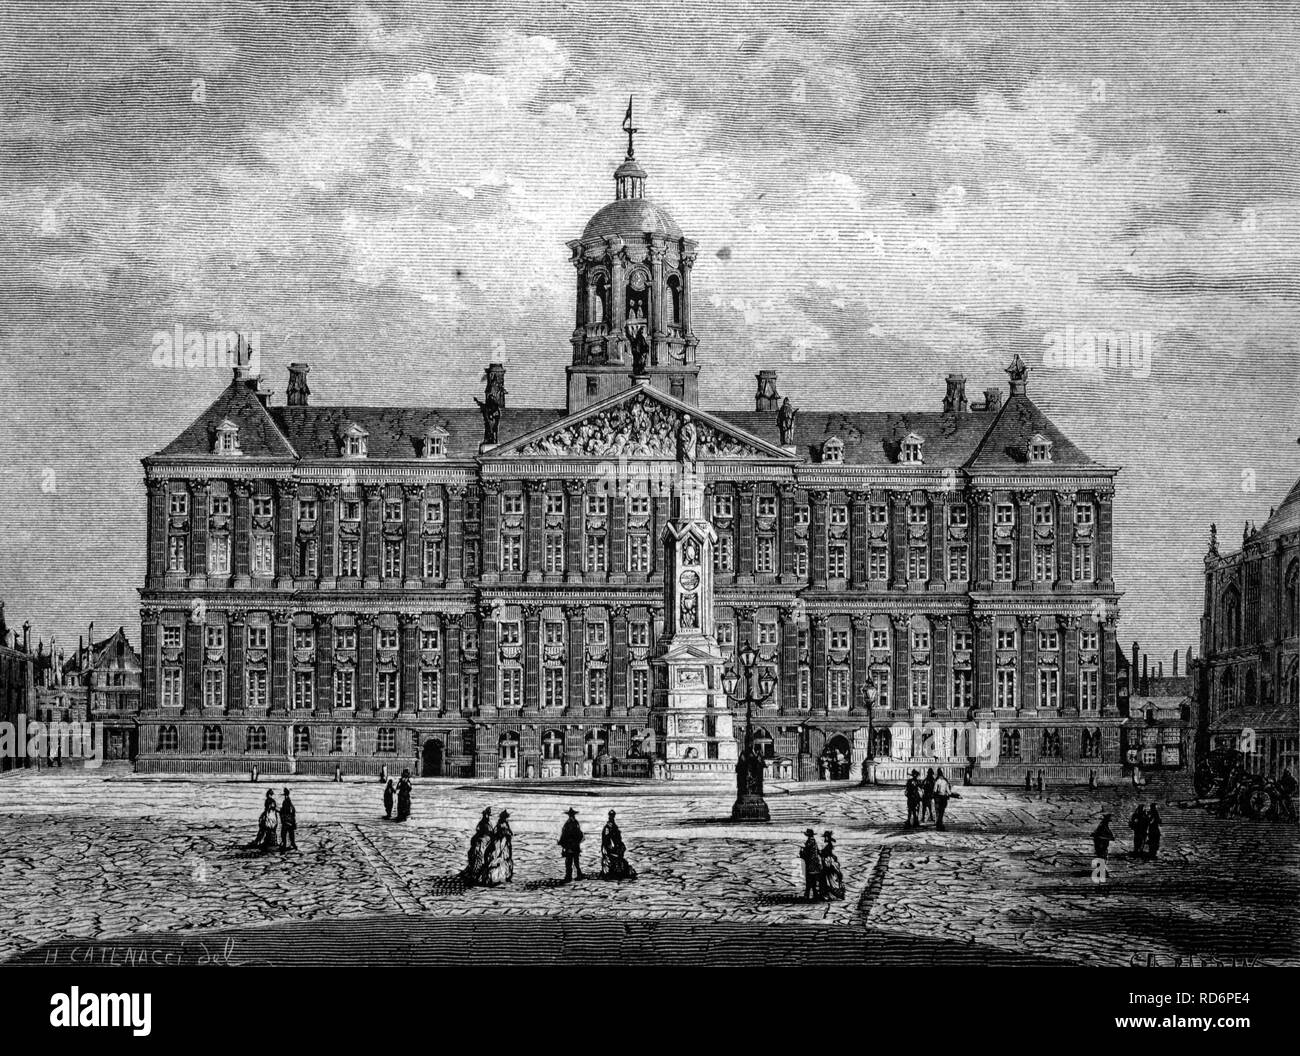 Königliche Palais in Amsterdam, Niederlande, historische Abbildung, ca. 1886 Stockfoto